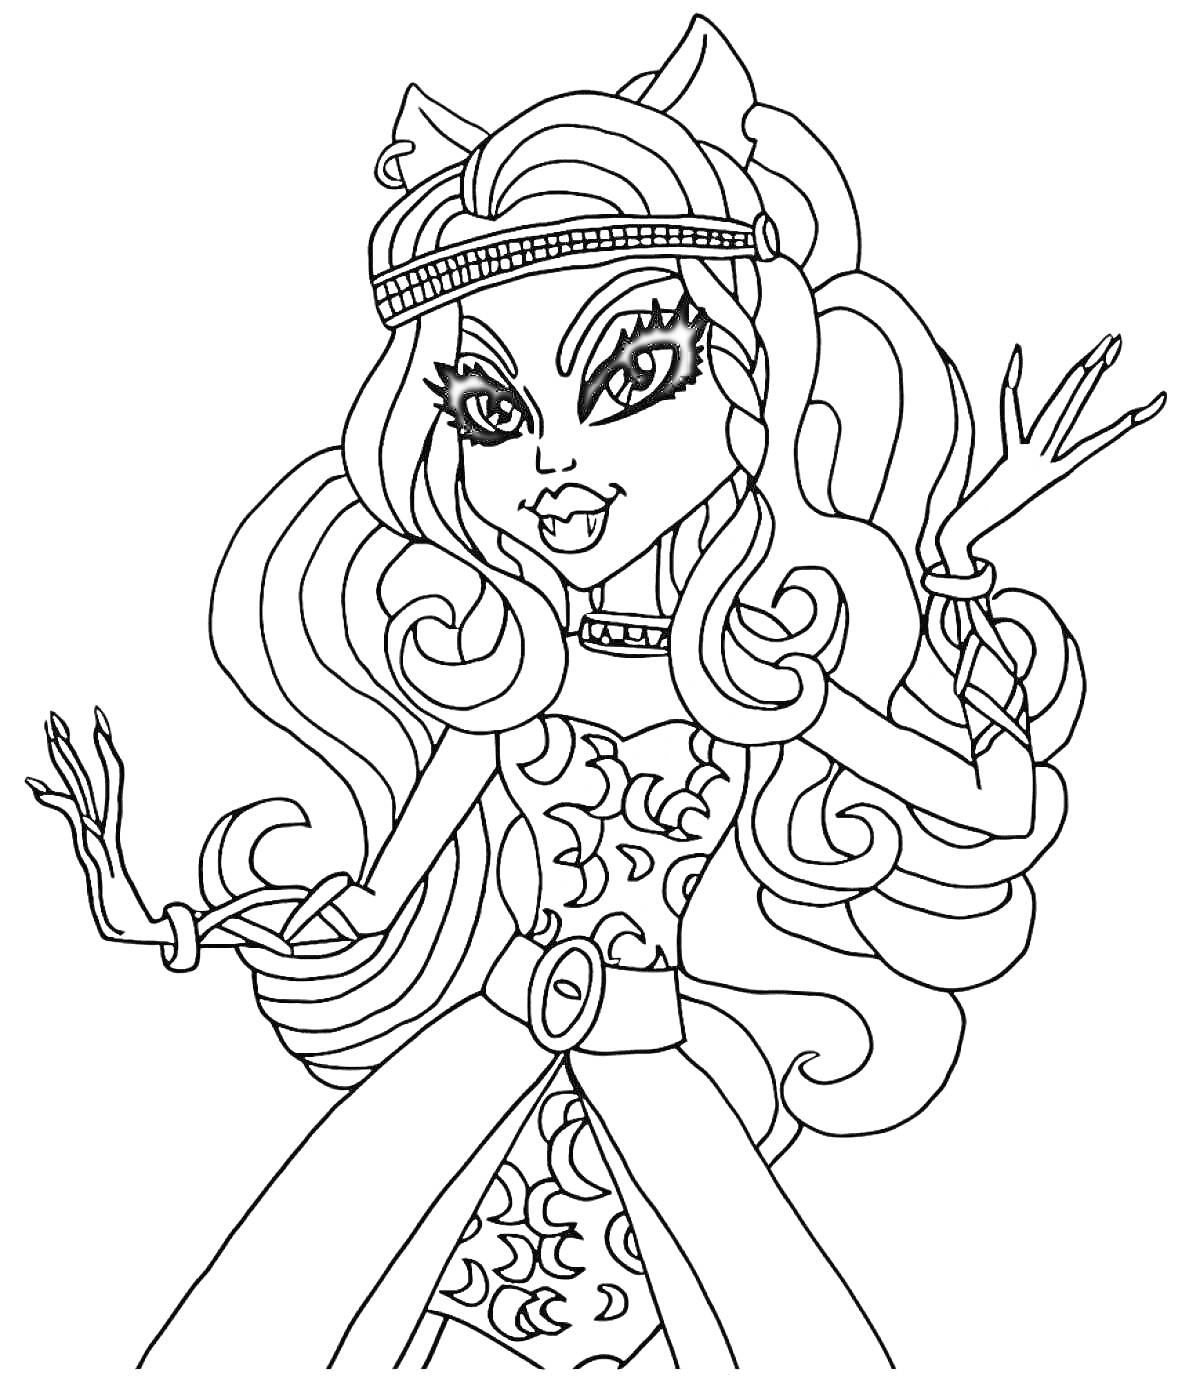 Раскраска Девушка с длинными волнистыми волосами, поднятыми руками и обручем на голове